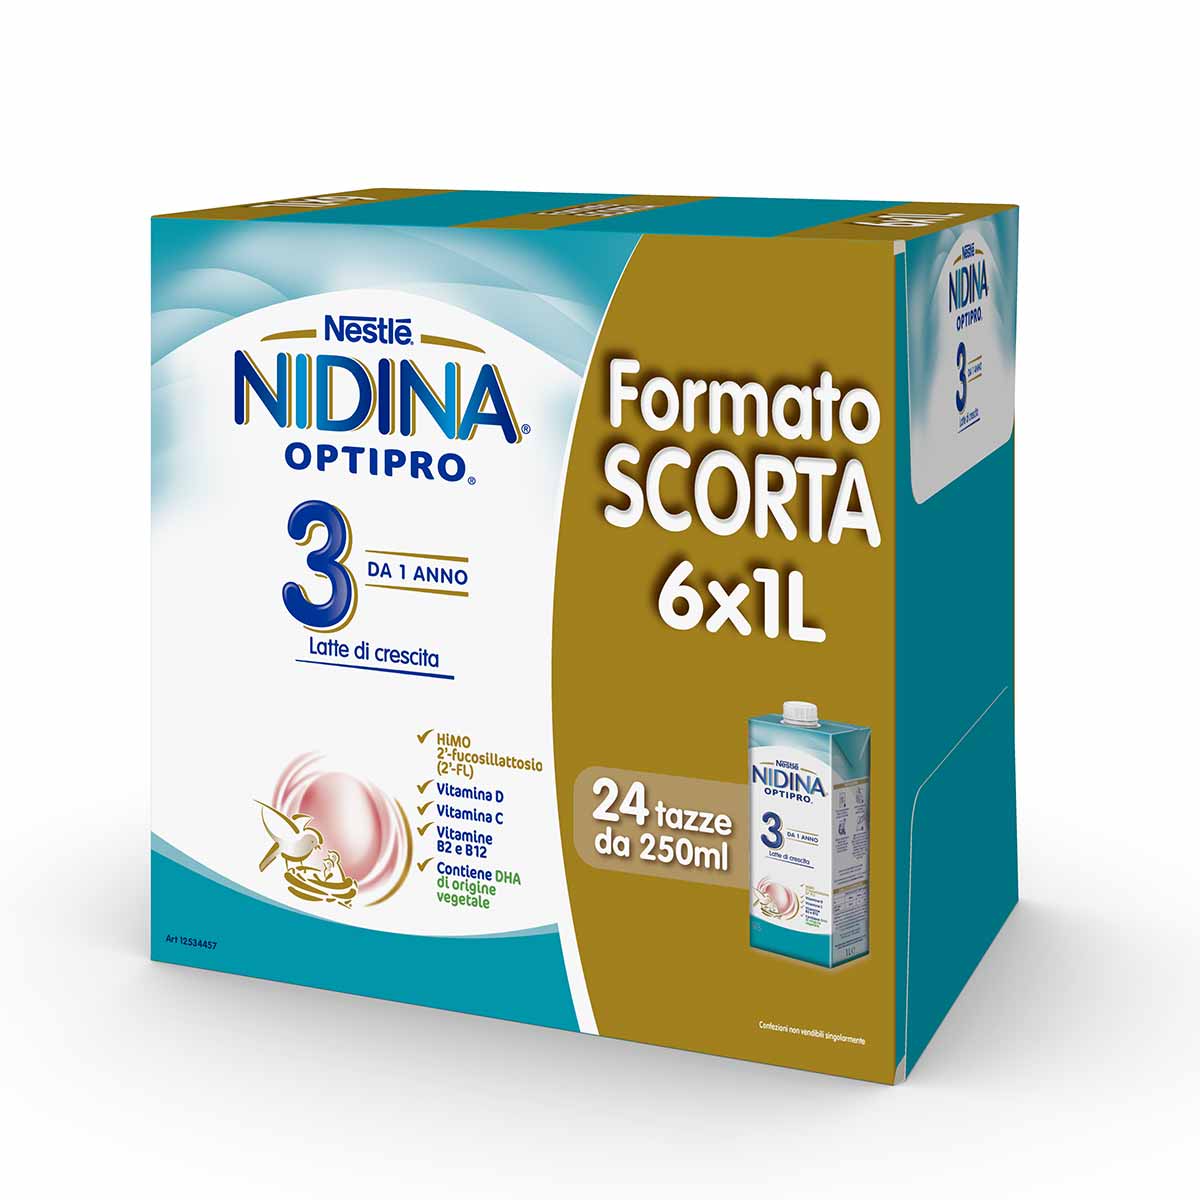 Nestlé NIDINA OPTIPRO 3 6x1L, Latte di crescita liquido, dai 12 mesi